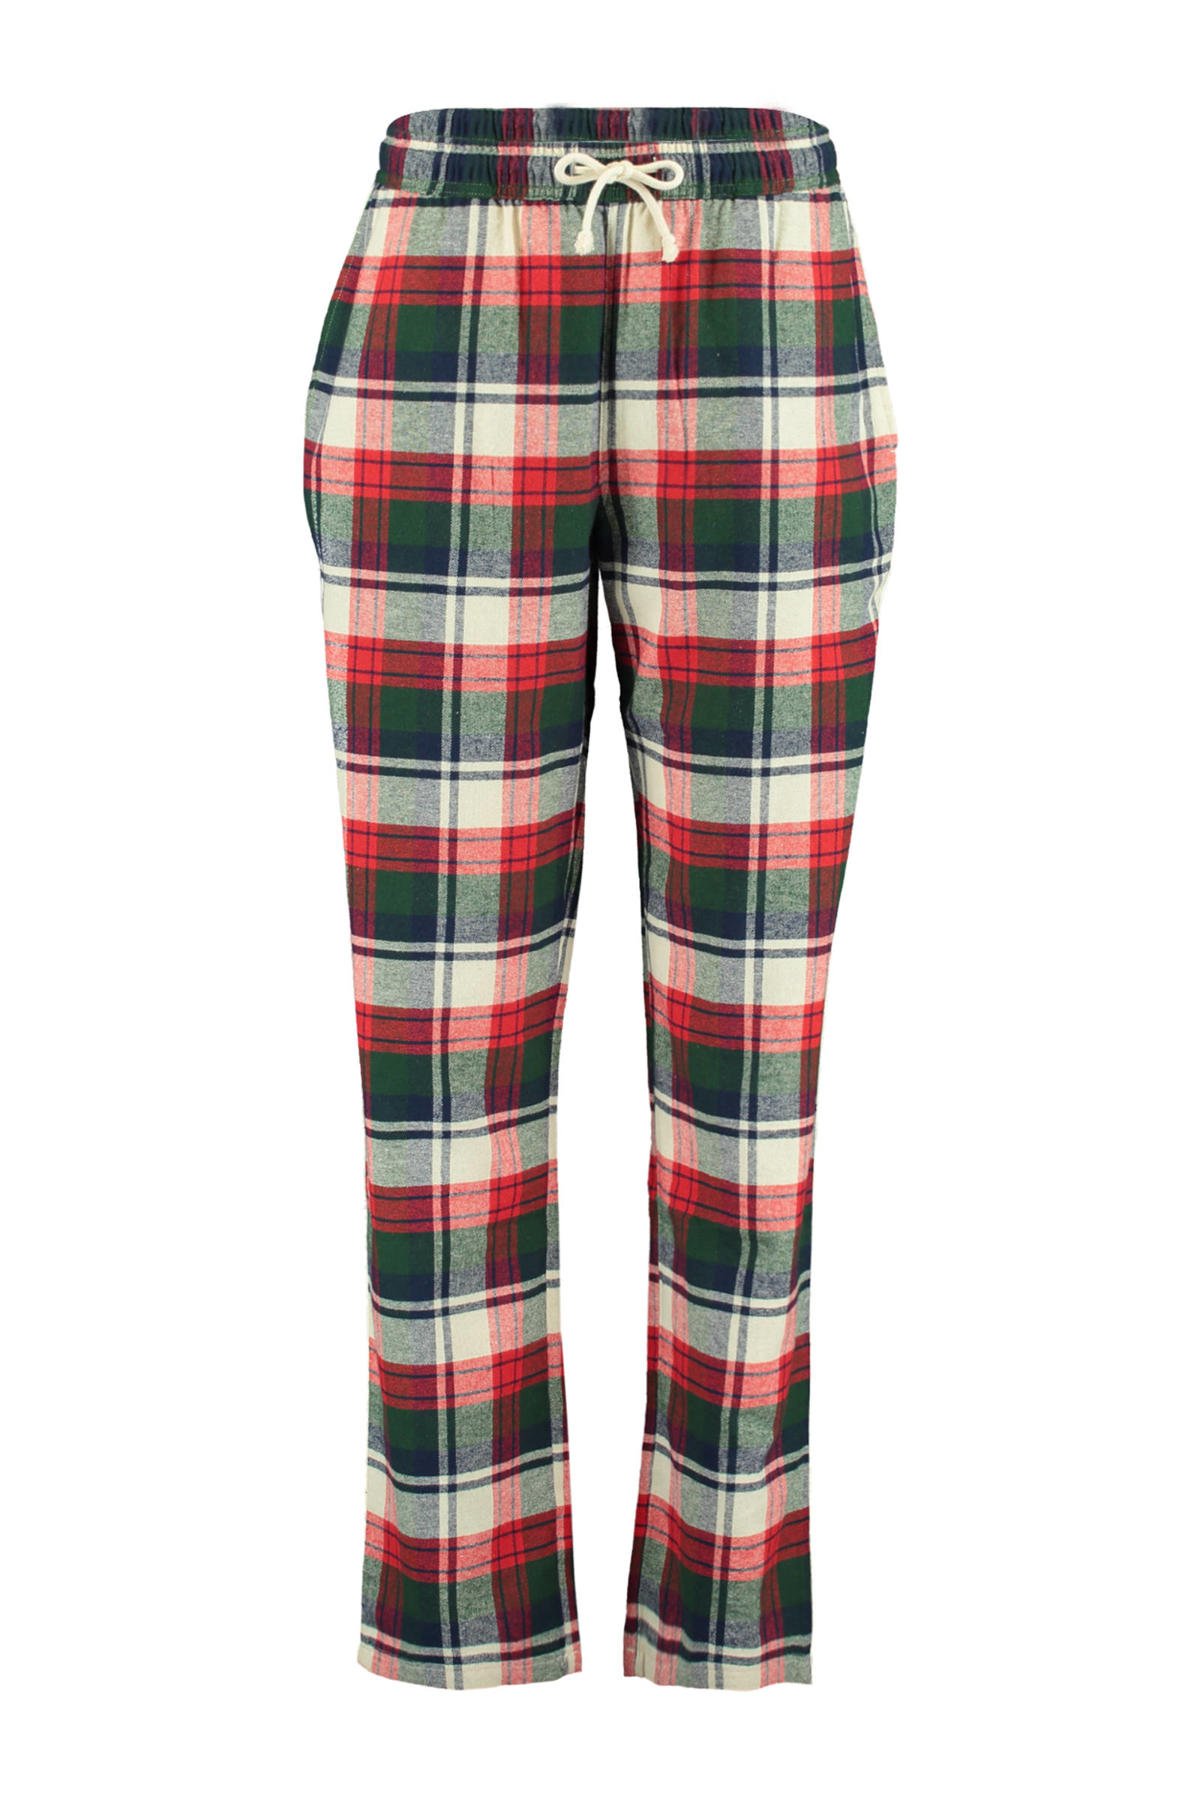 America geruite pyjamabroek Labello rood/groen/wit wehkamp